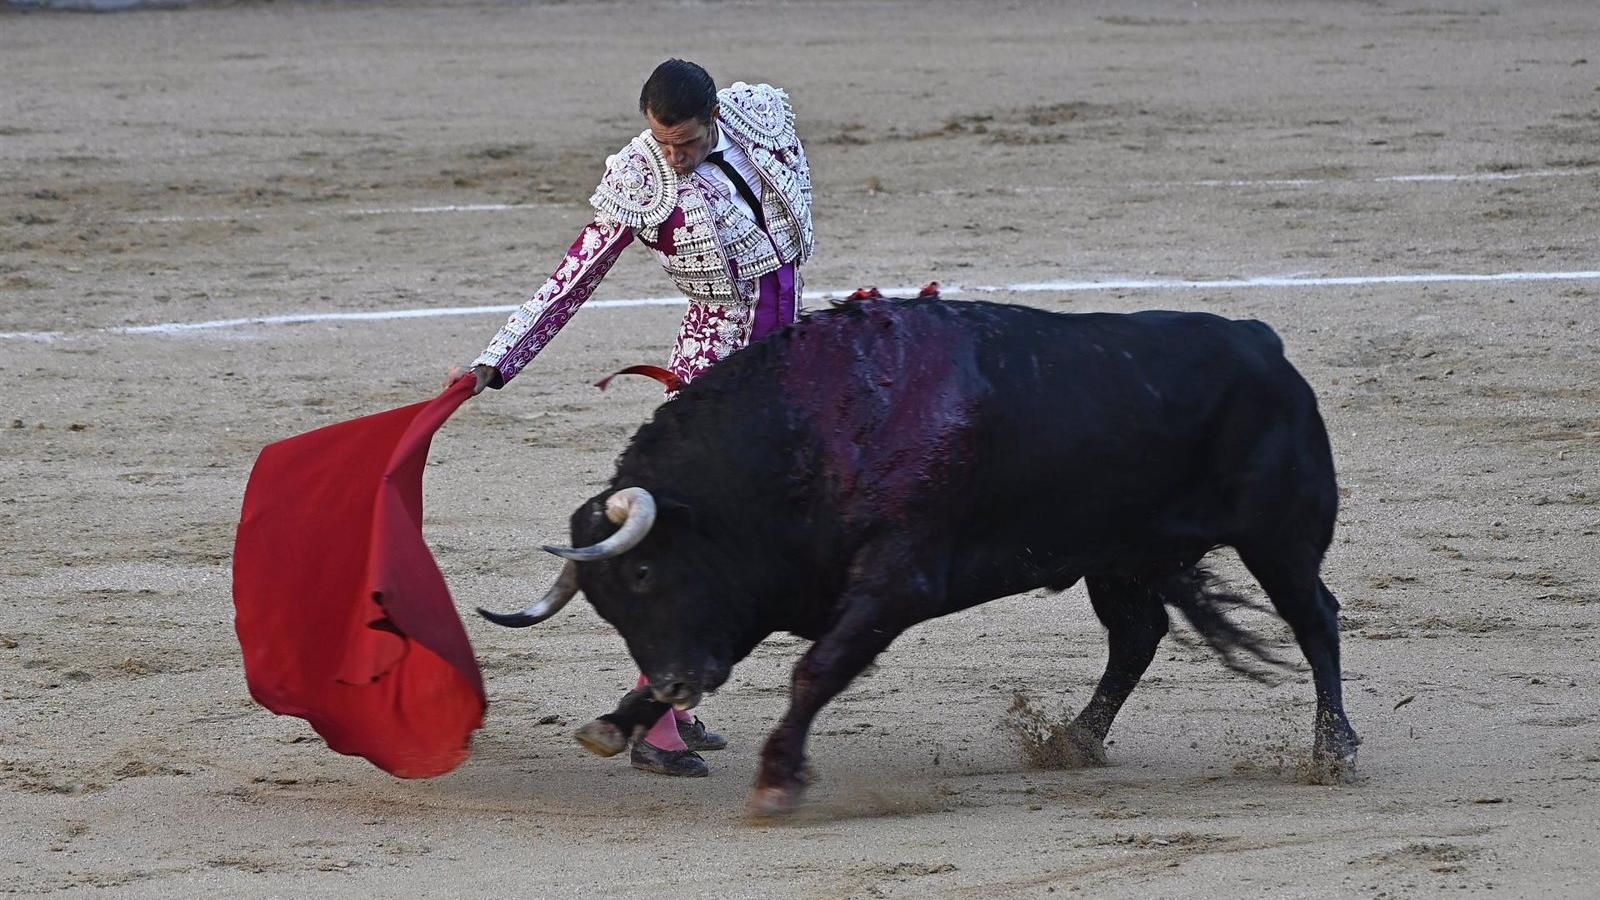 Un decreto regional podría ampliar el catálogo de espectáculos taurinos e incluir corridas sin la muerte del animal